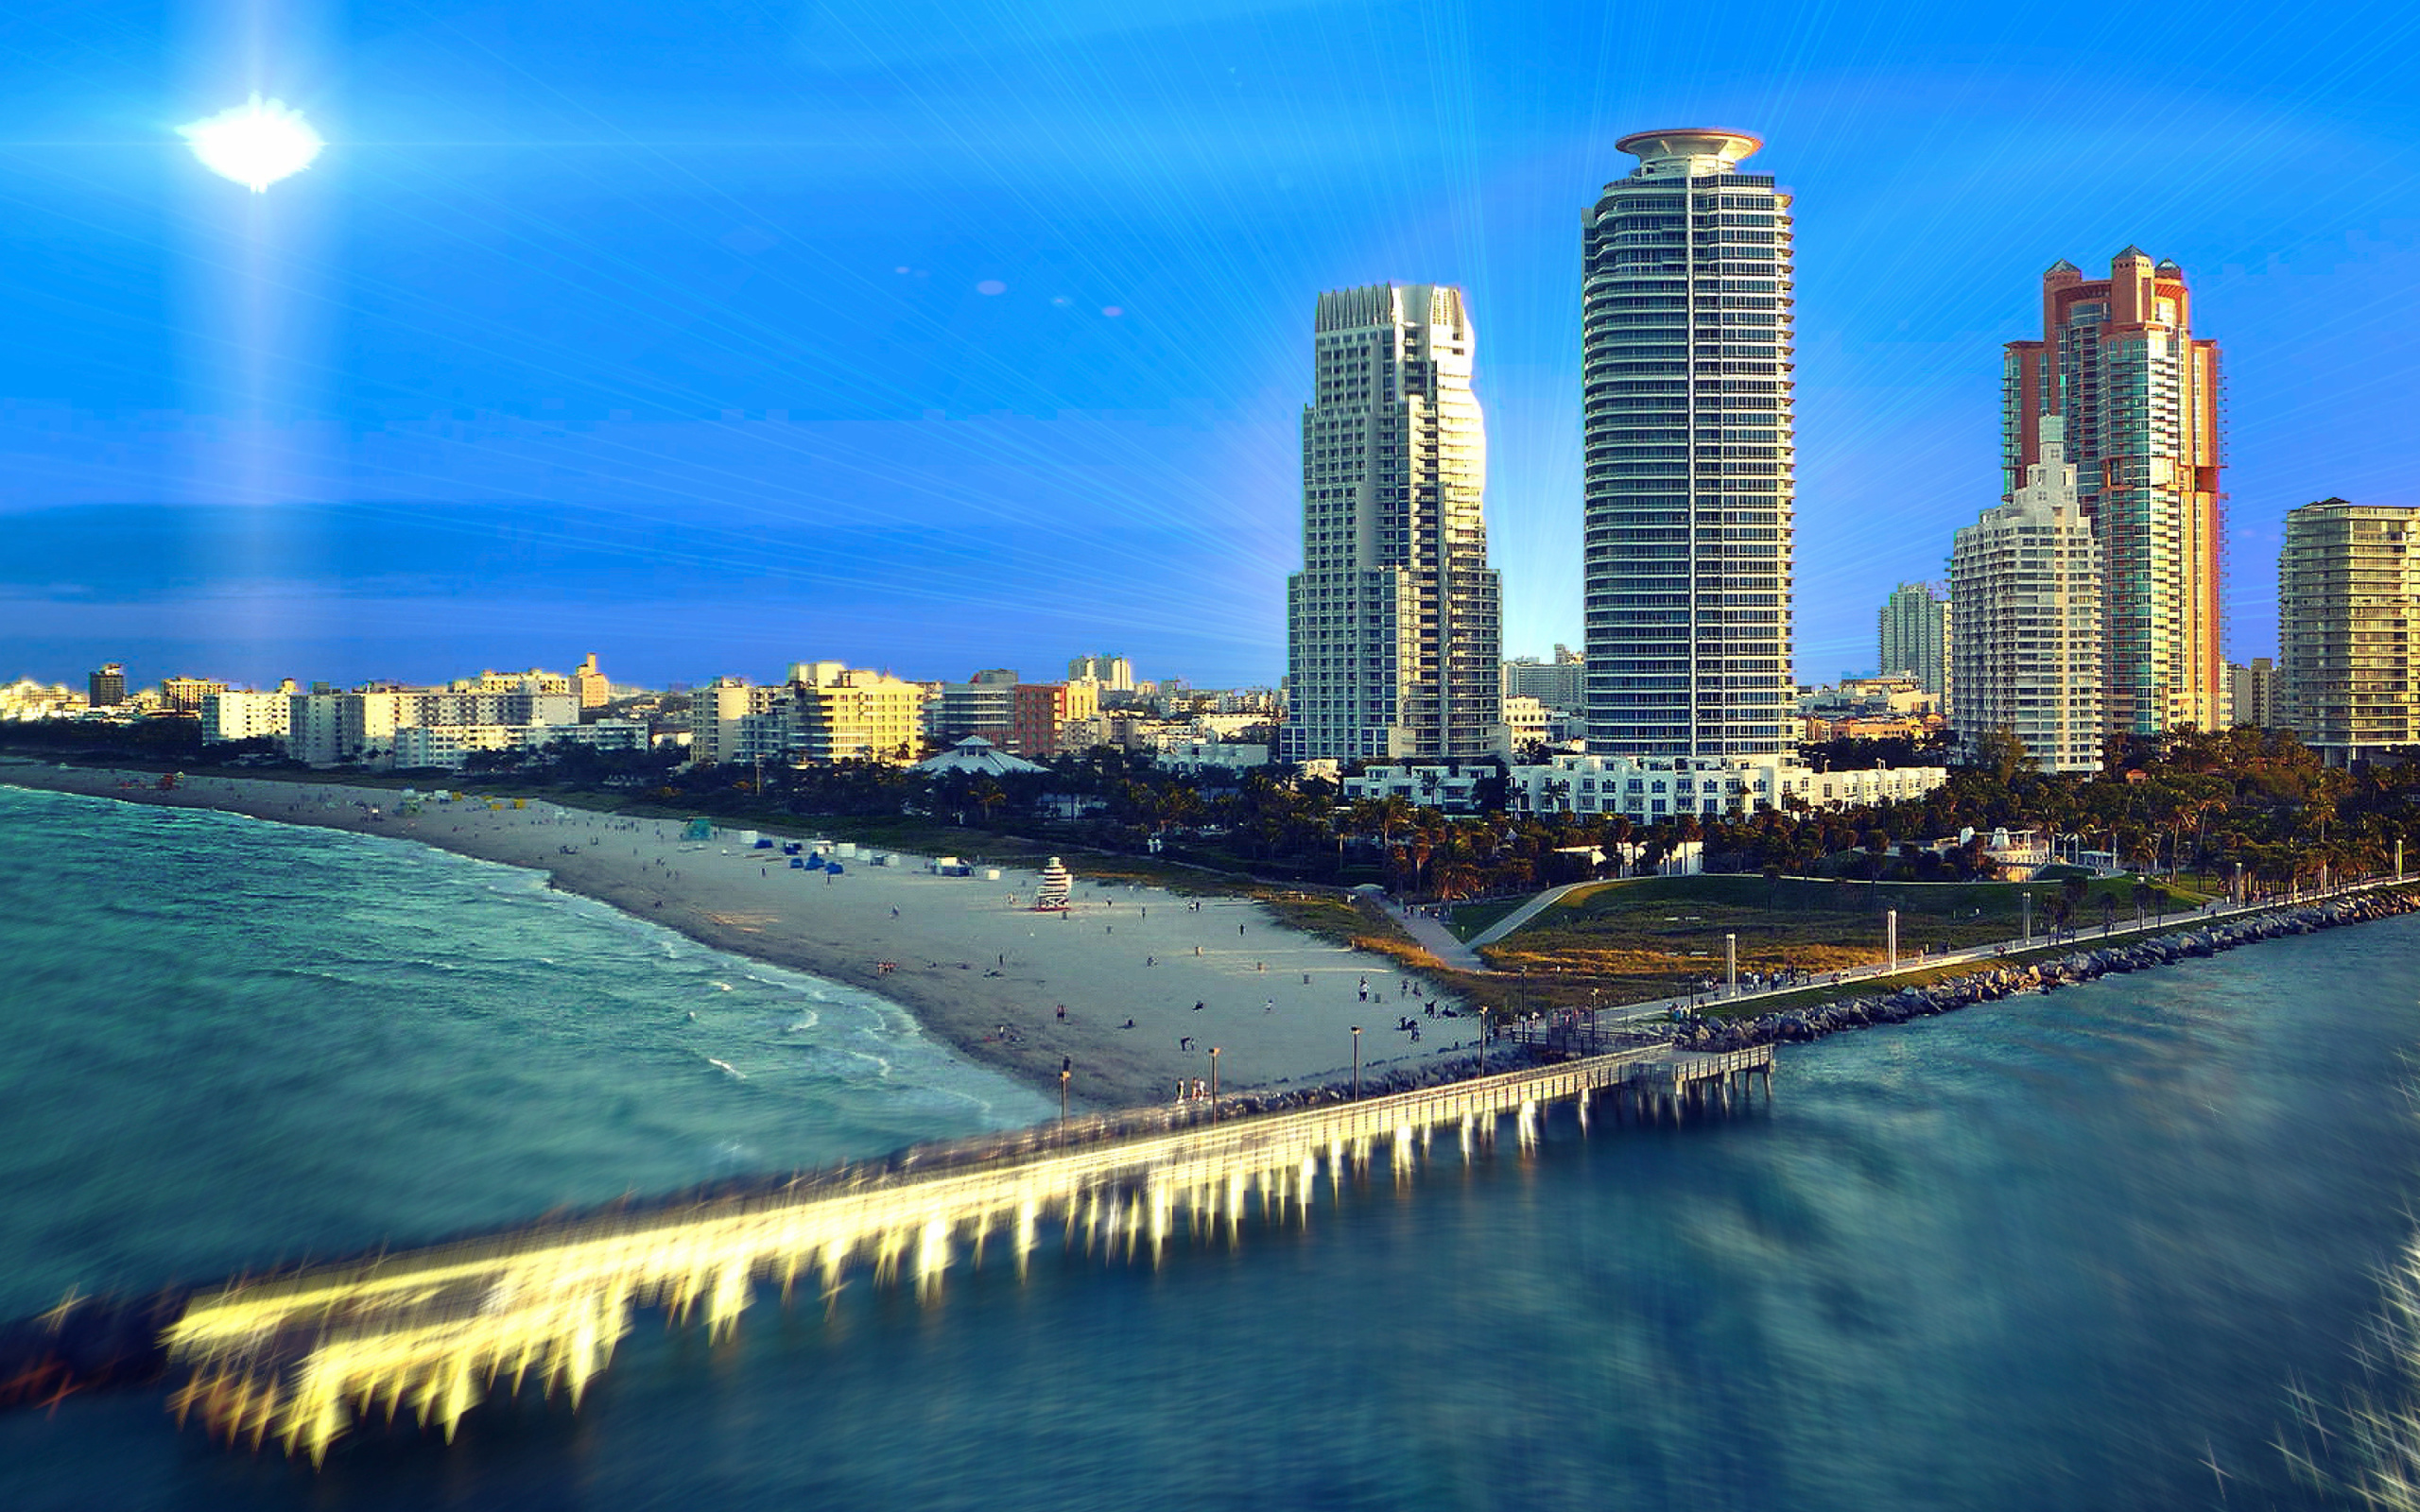 Обои Miami Beach with Hotels 2560x1600